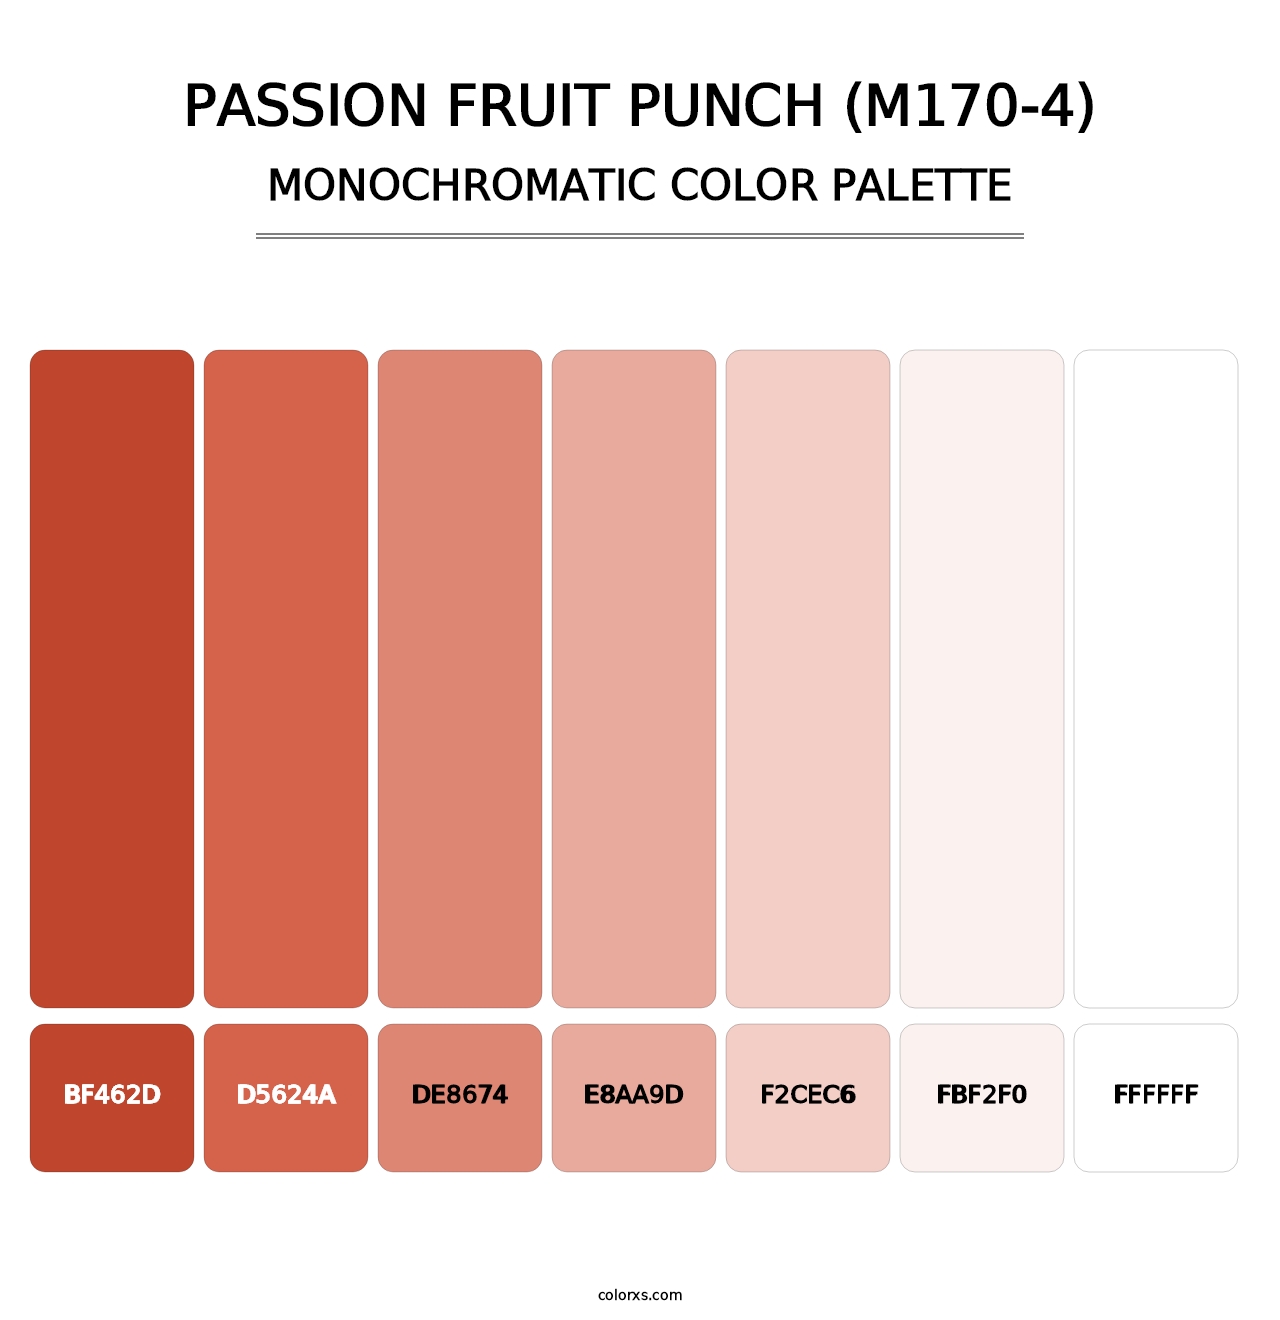 Passion Fruit Punch (M170-4) - Monochromatic Color Palette